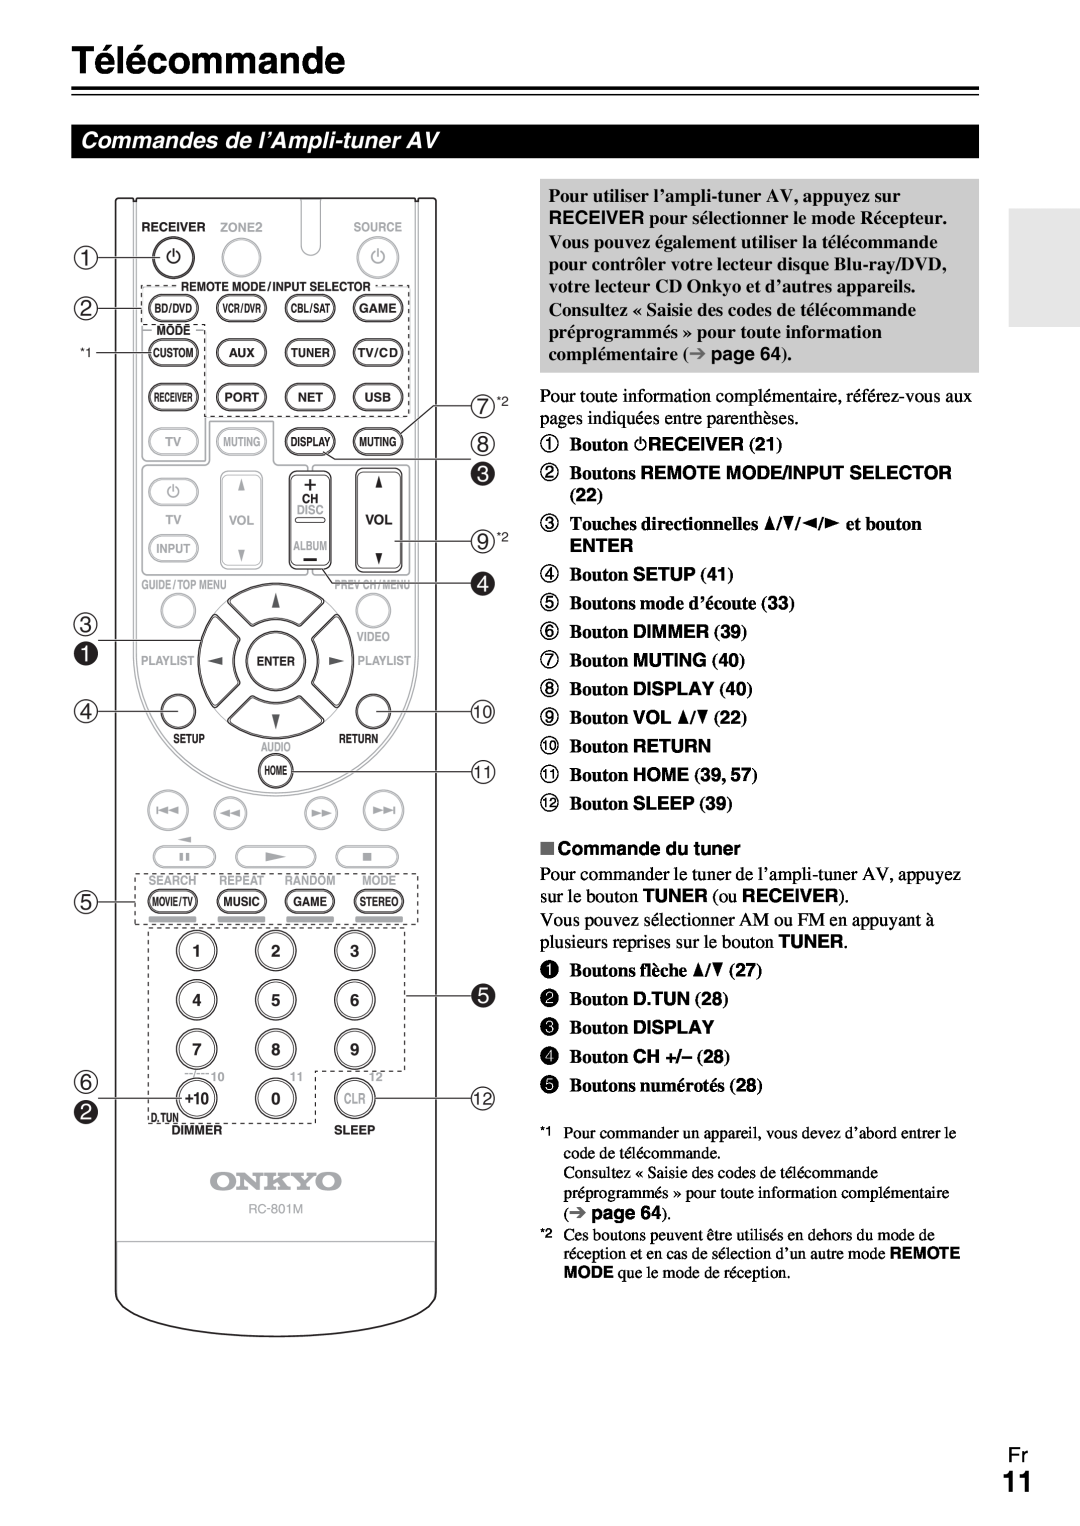 Onkyo HT-R990 Télécommande, c a d, Commandes de l’Ampli-tunerAV, ha Bouton 8RECEIVER, i*2 ENTER, hBouton DISPLAY, page 